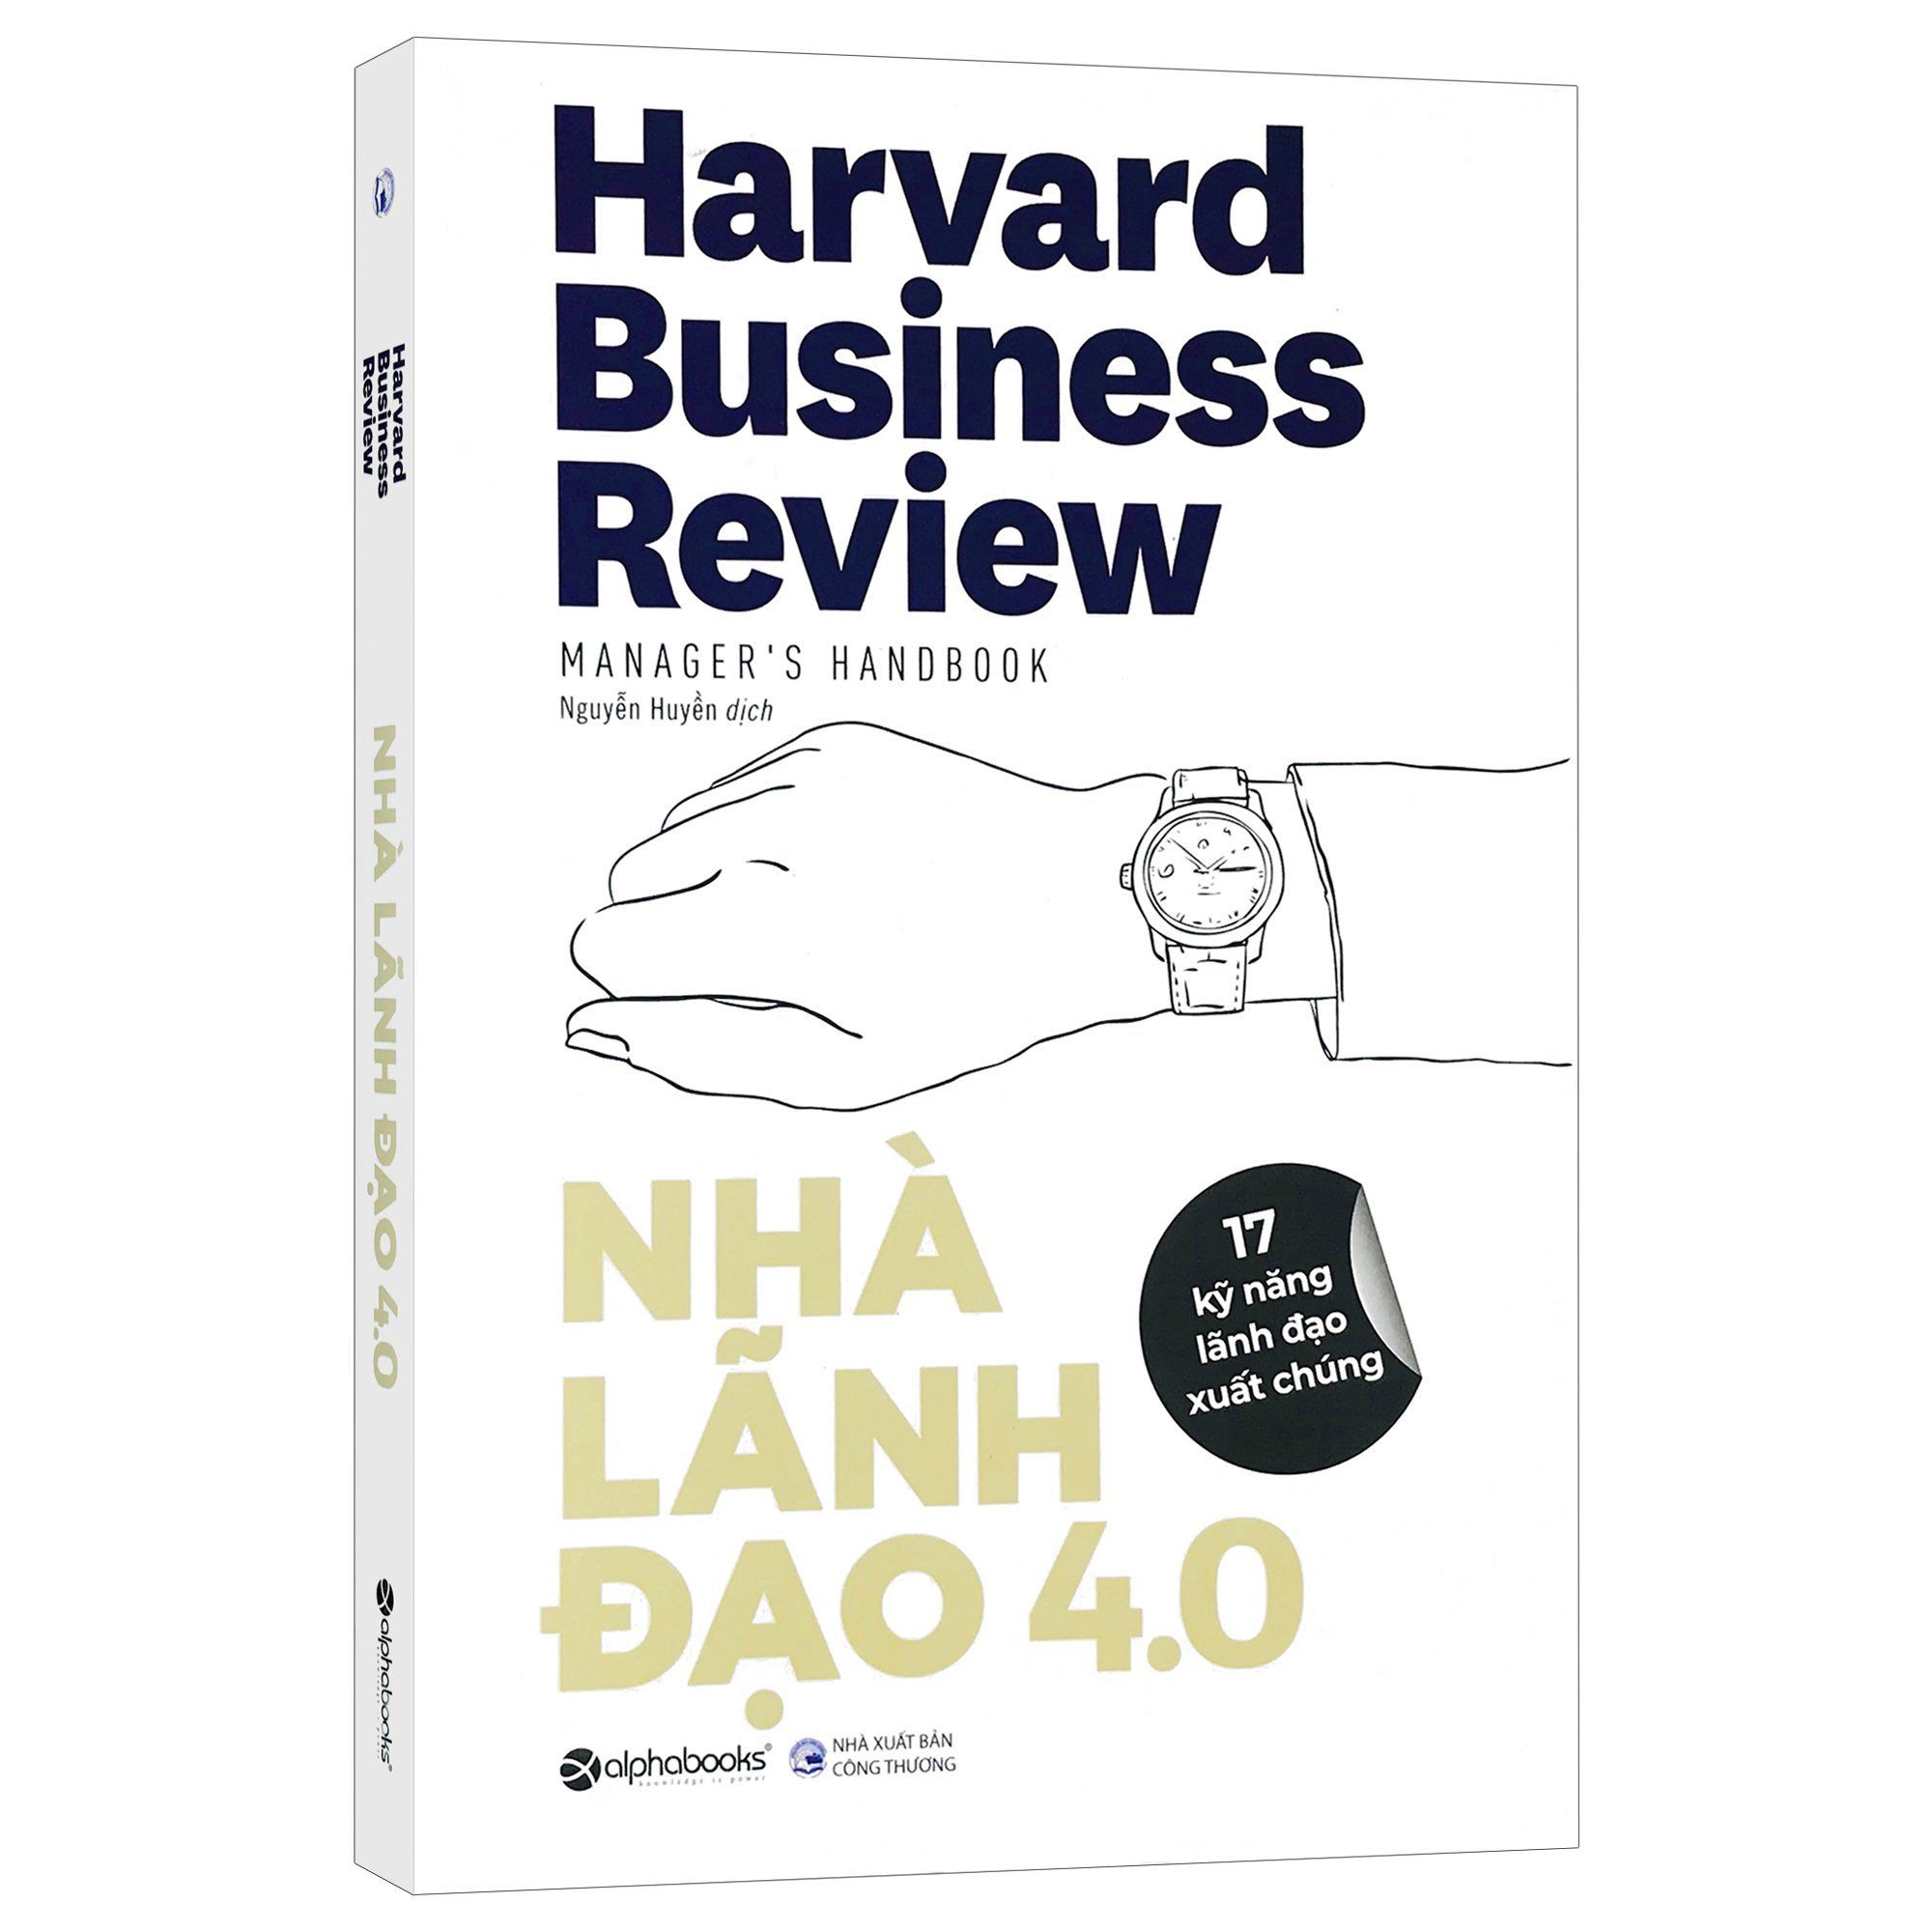 Sách - Harvard Business Review - Nhà Lãnh Đạo 4.0 - 17 Kỹ năng lãnh đạo xuất chúng - Thanh Hà Books